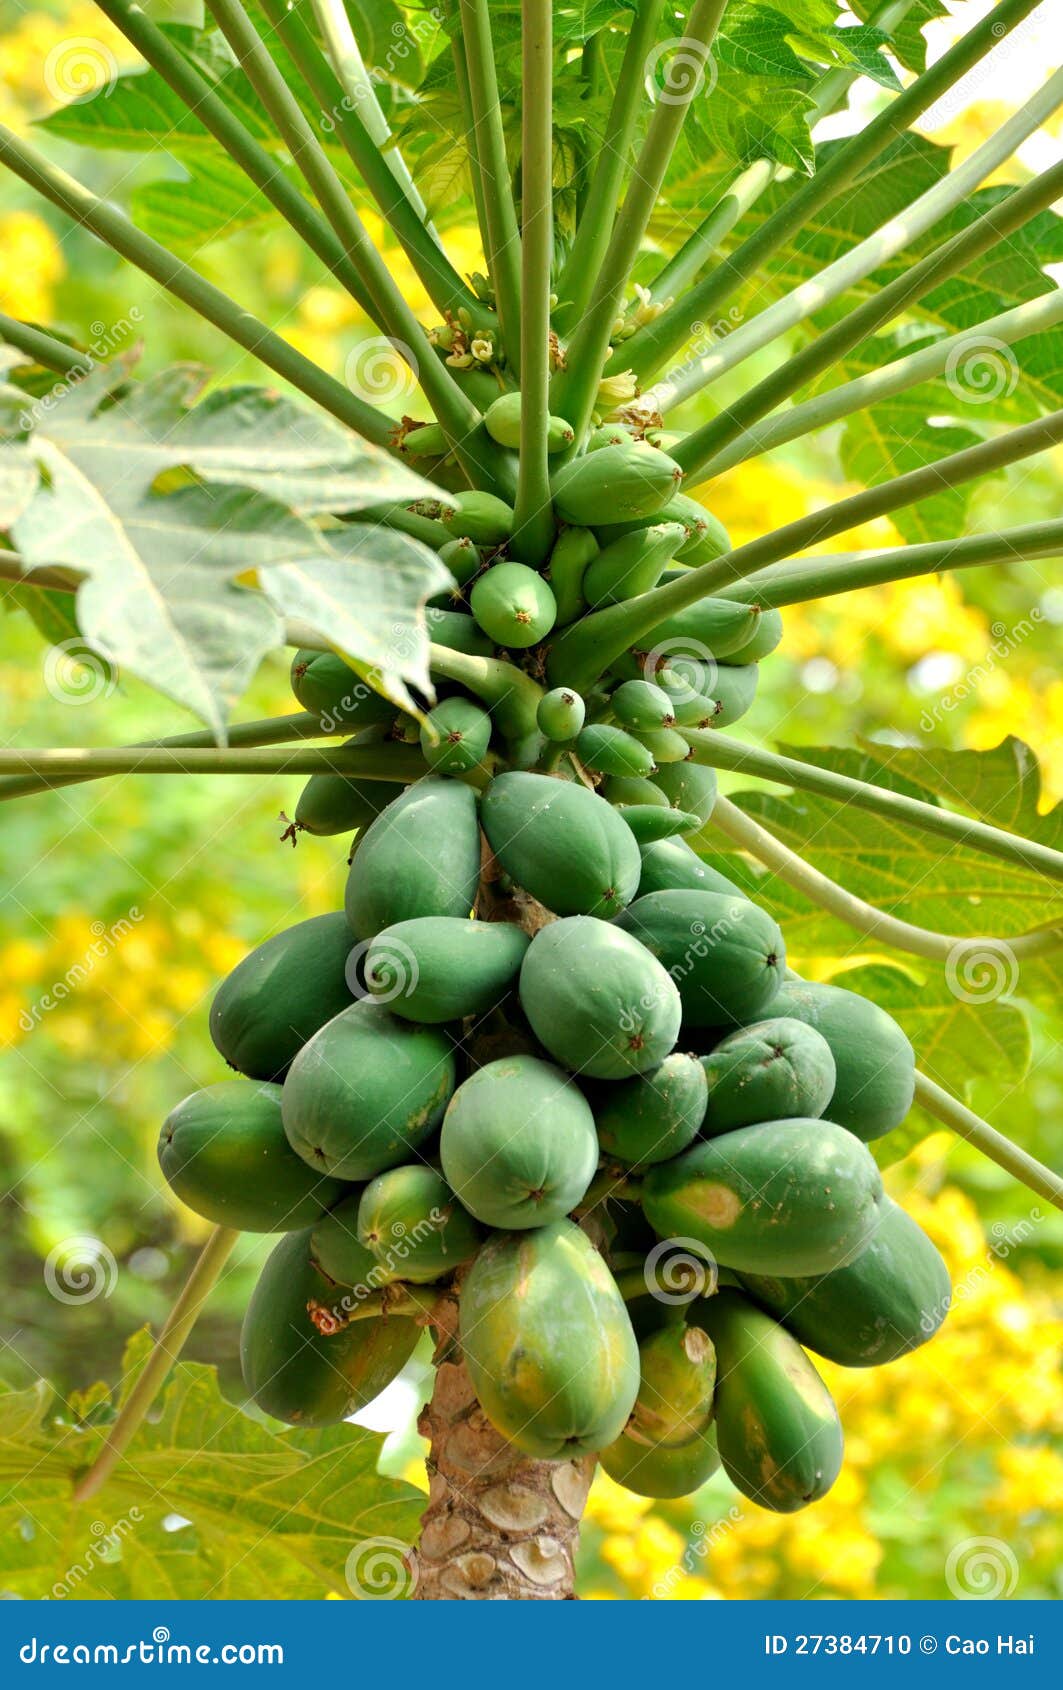 Qu'est-ce qu'un arbre fruitier papaye